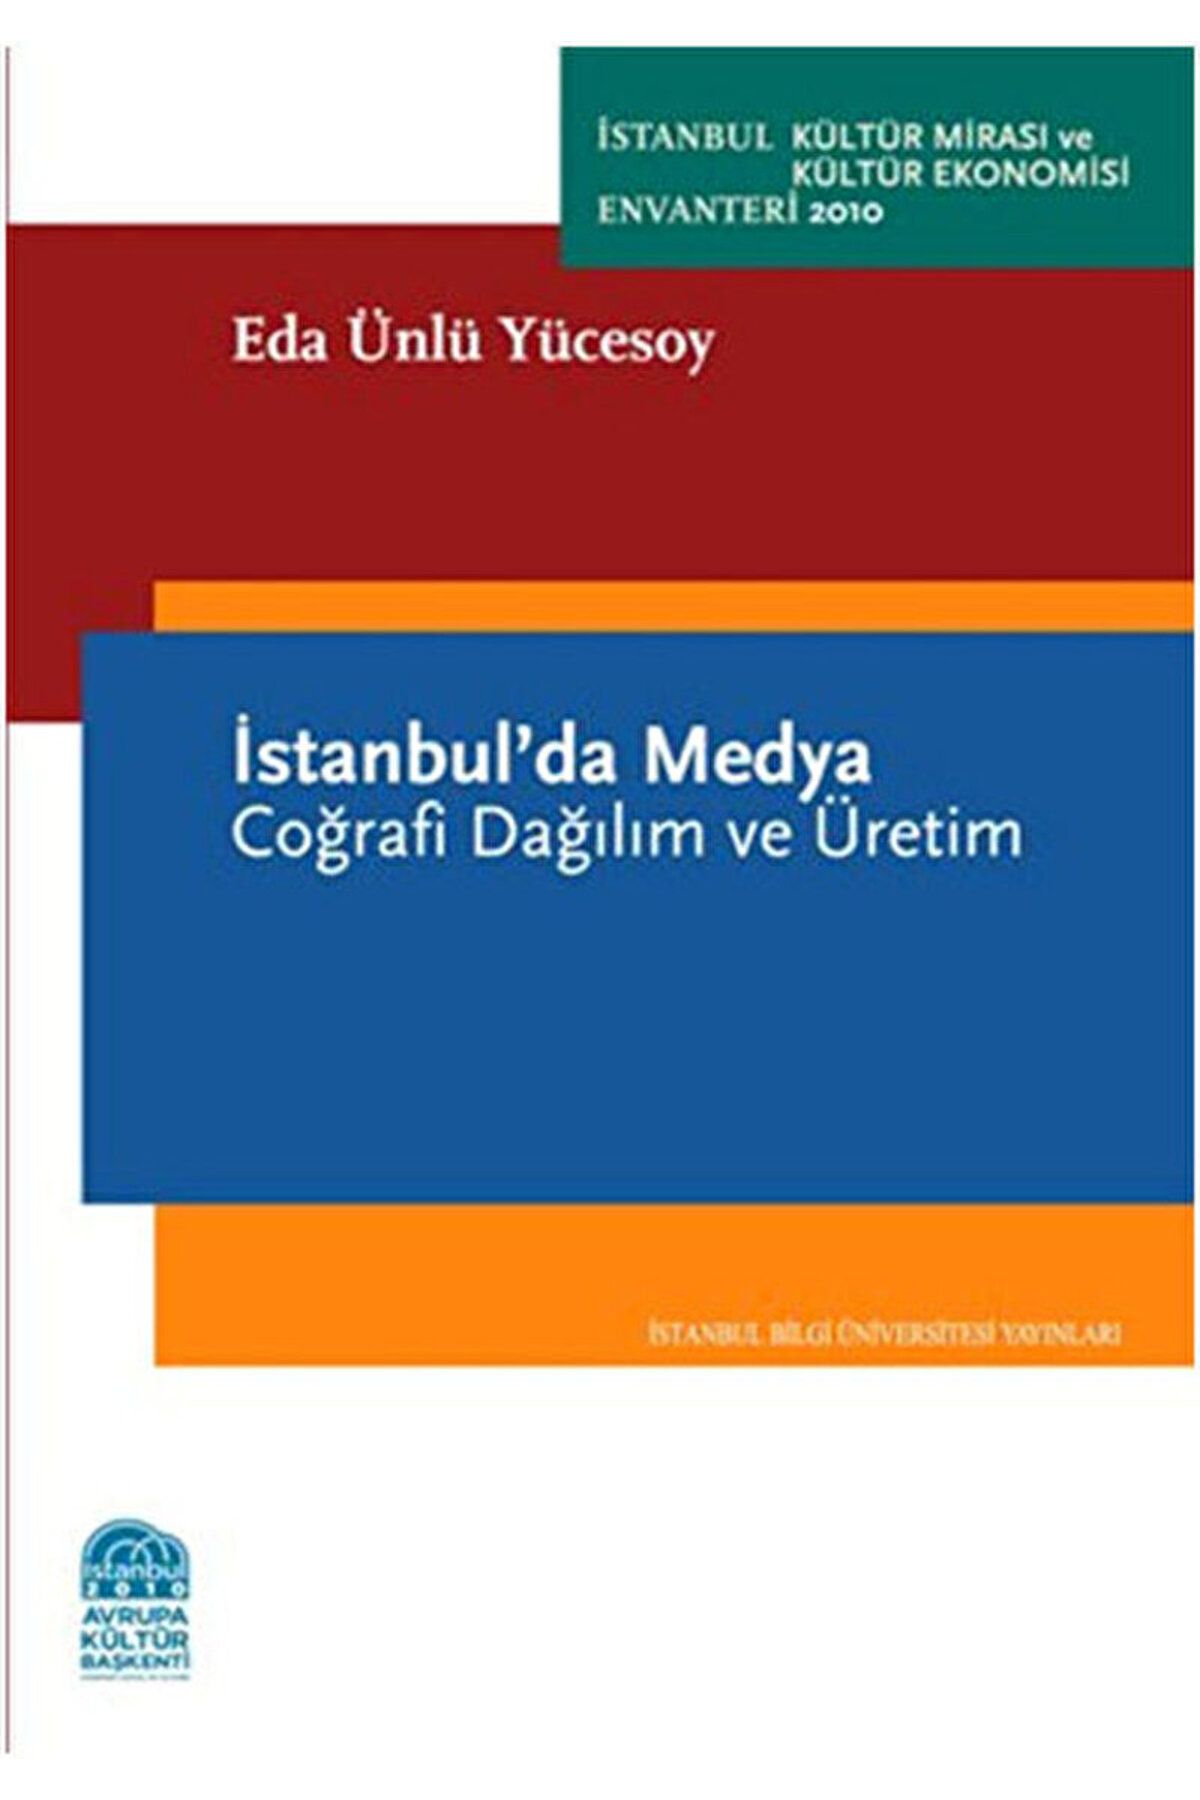 İstanbul Bilgi Üniversitesi Yayınları İstanbul’da Medya / Eda Ünlü Yücesoy / İstanbul Bilgi Üniversitesi Yayınları / 9786053992080